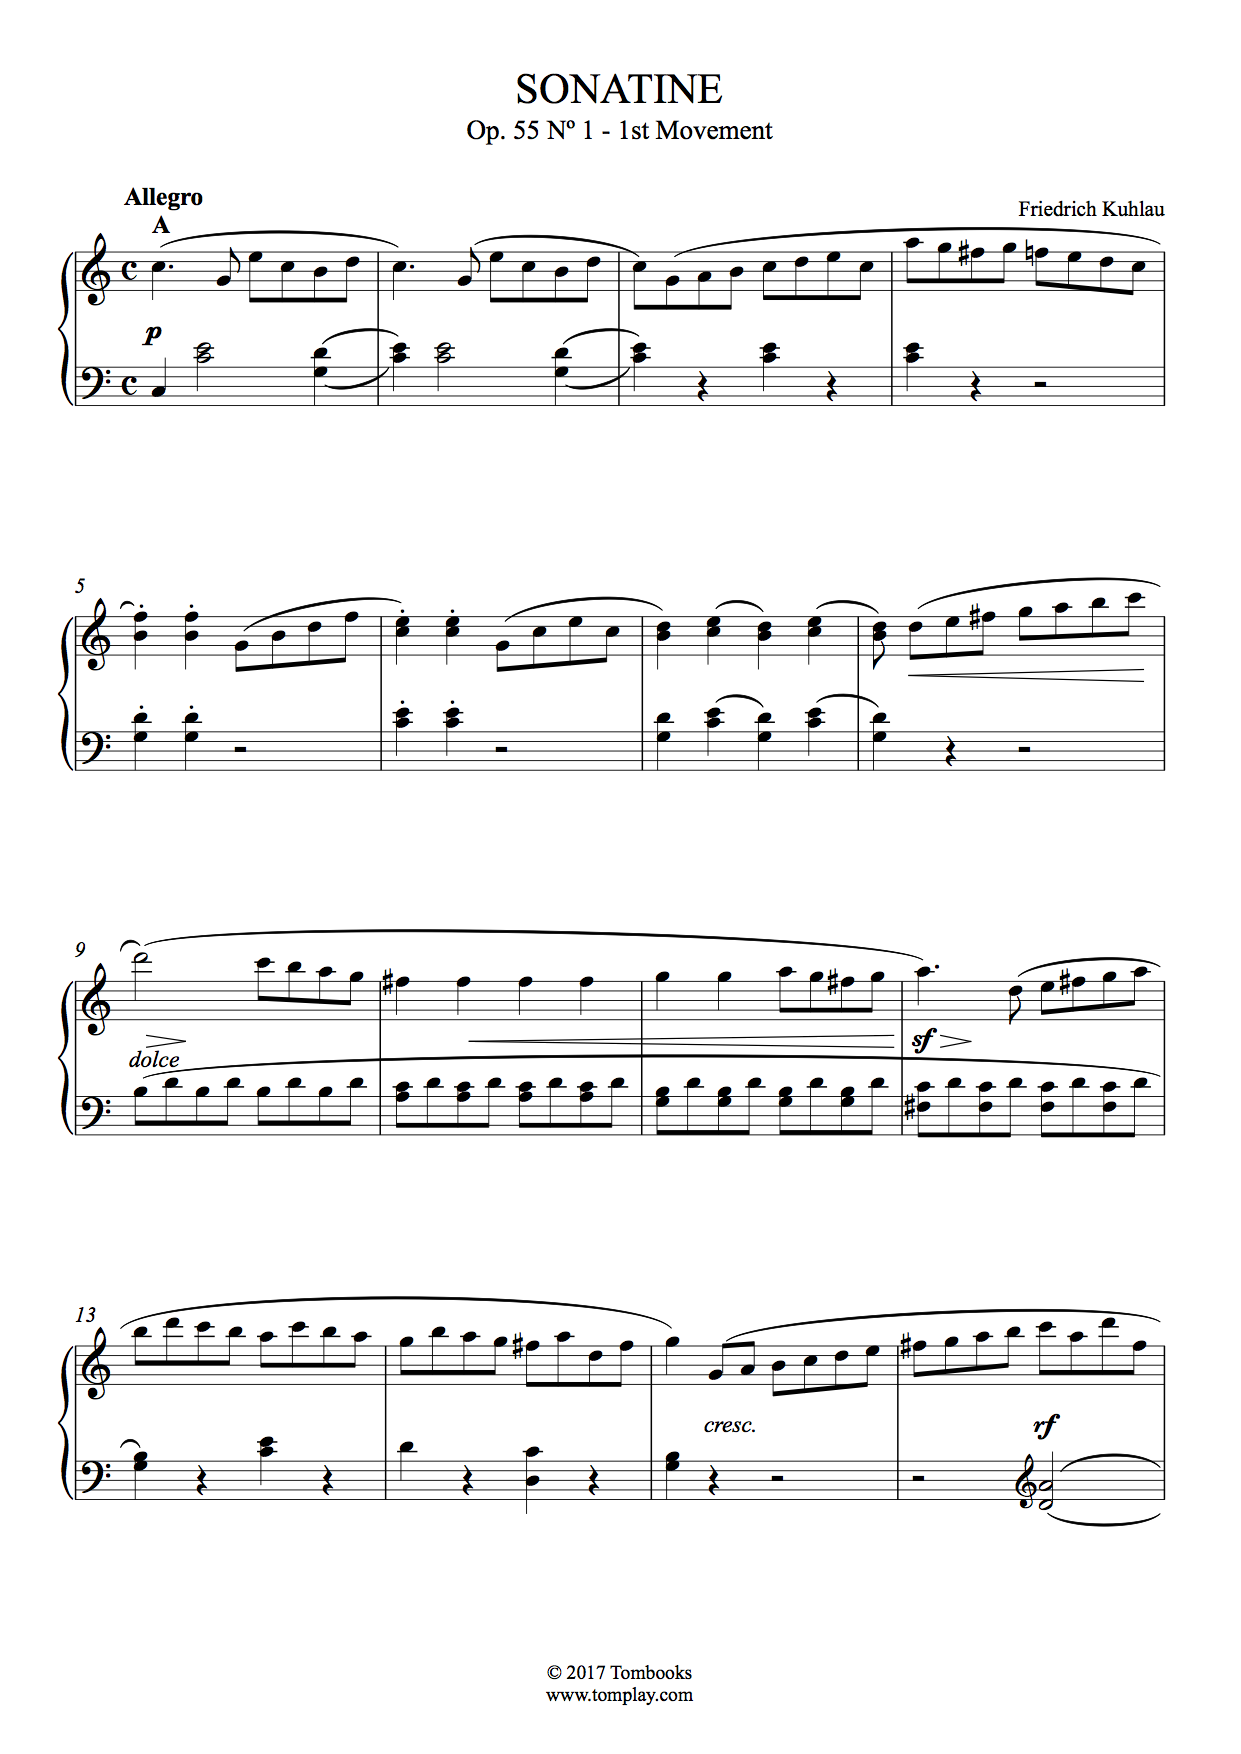 ピアノ 楽譜 ソナチネ ハ長調 Op.551〜第1楽章：アレグロ (クーラウ)